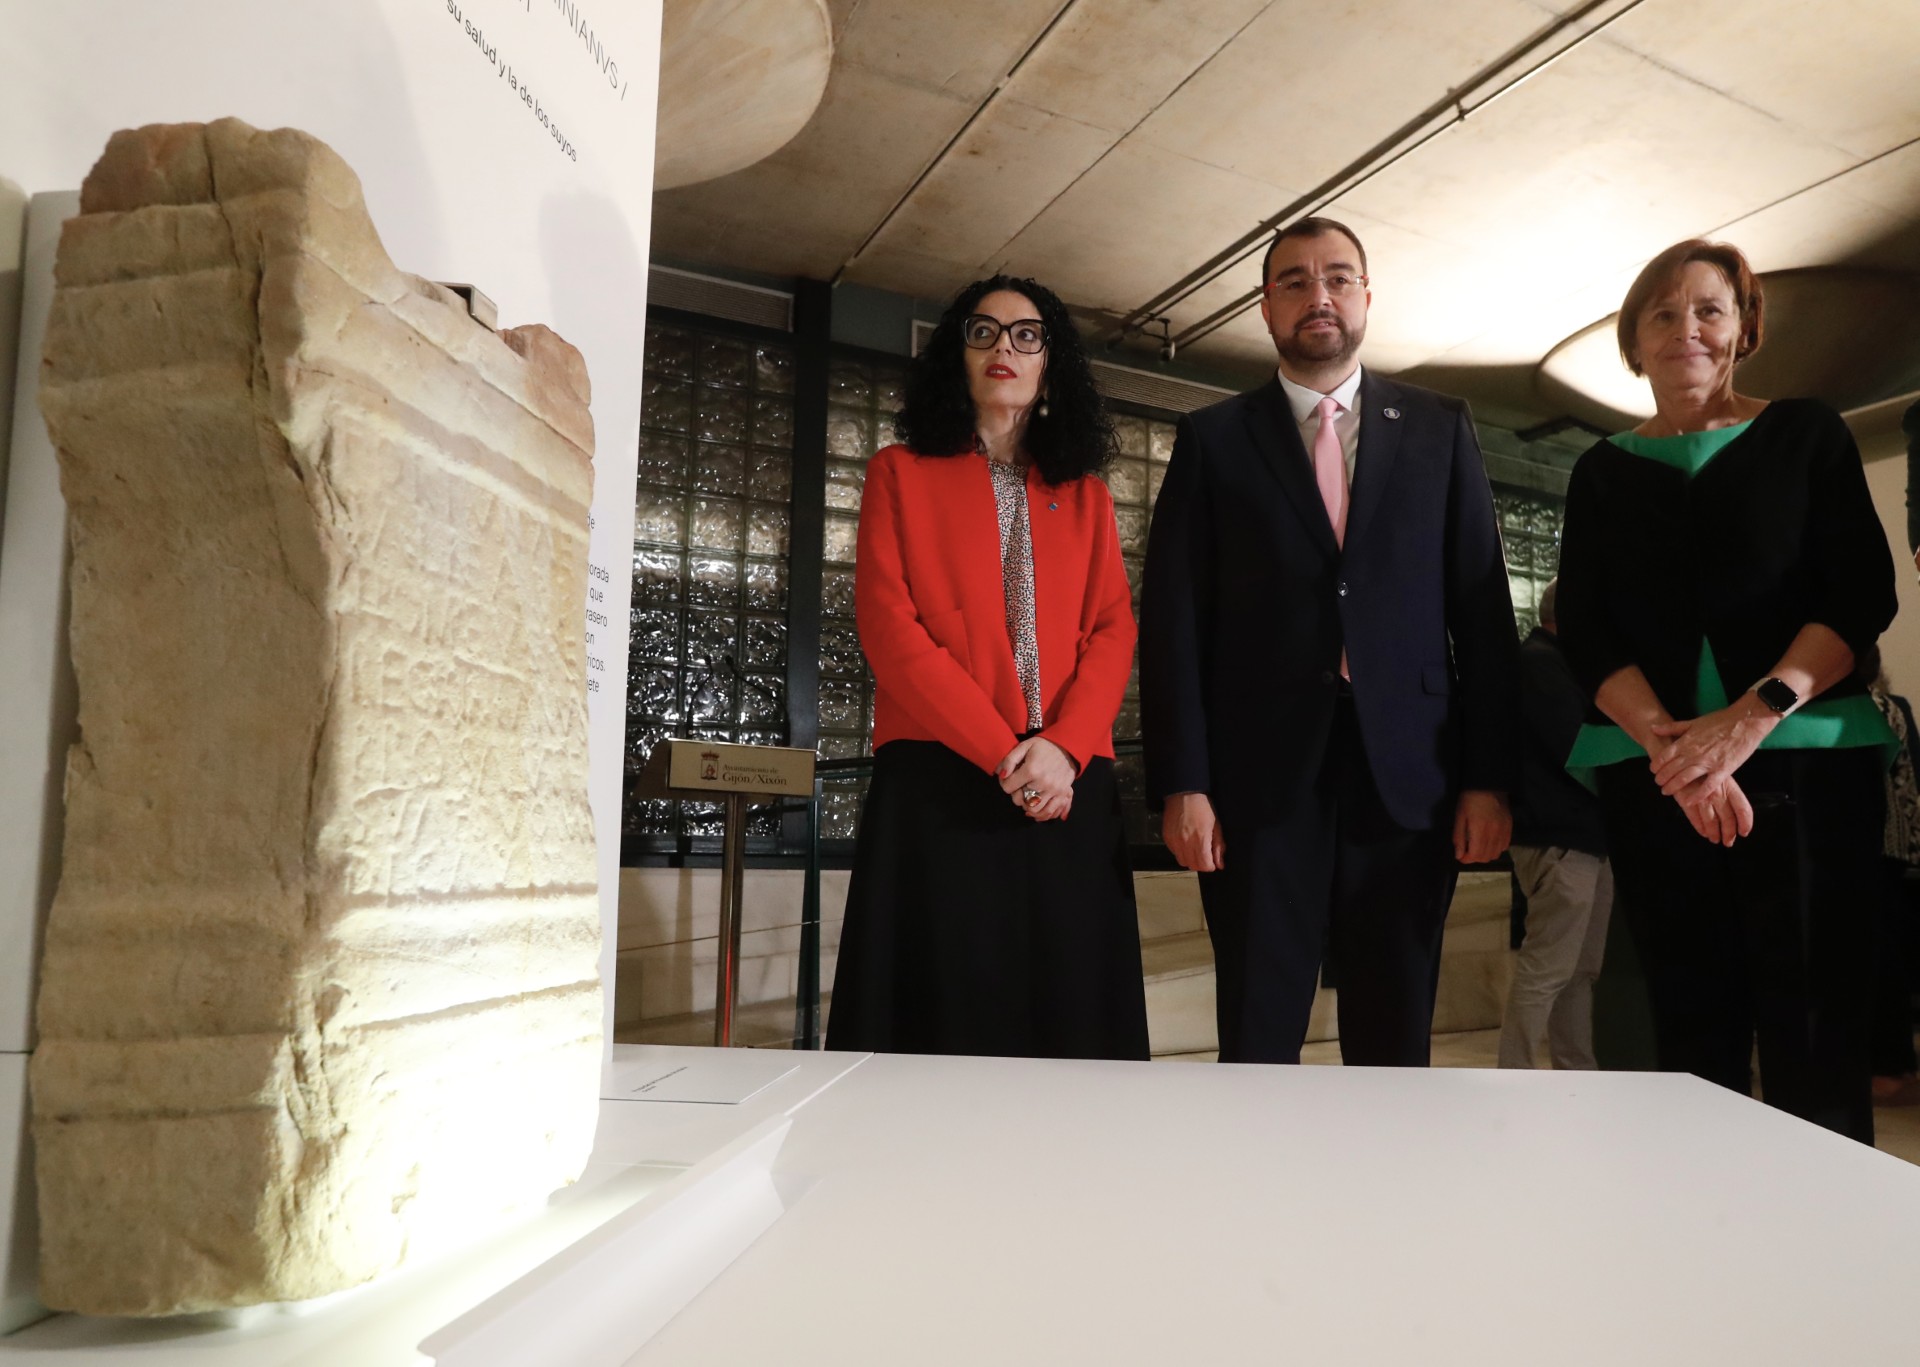 Imagen - El Principado expone en Gijón/Xixón el ara restaurada de la Fortuna Balnearia